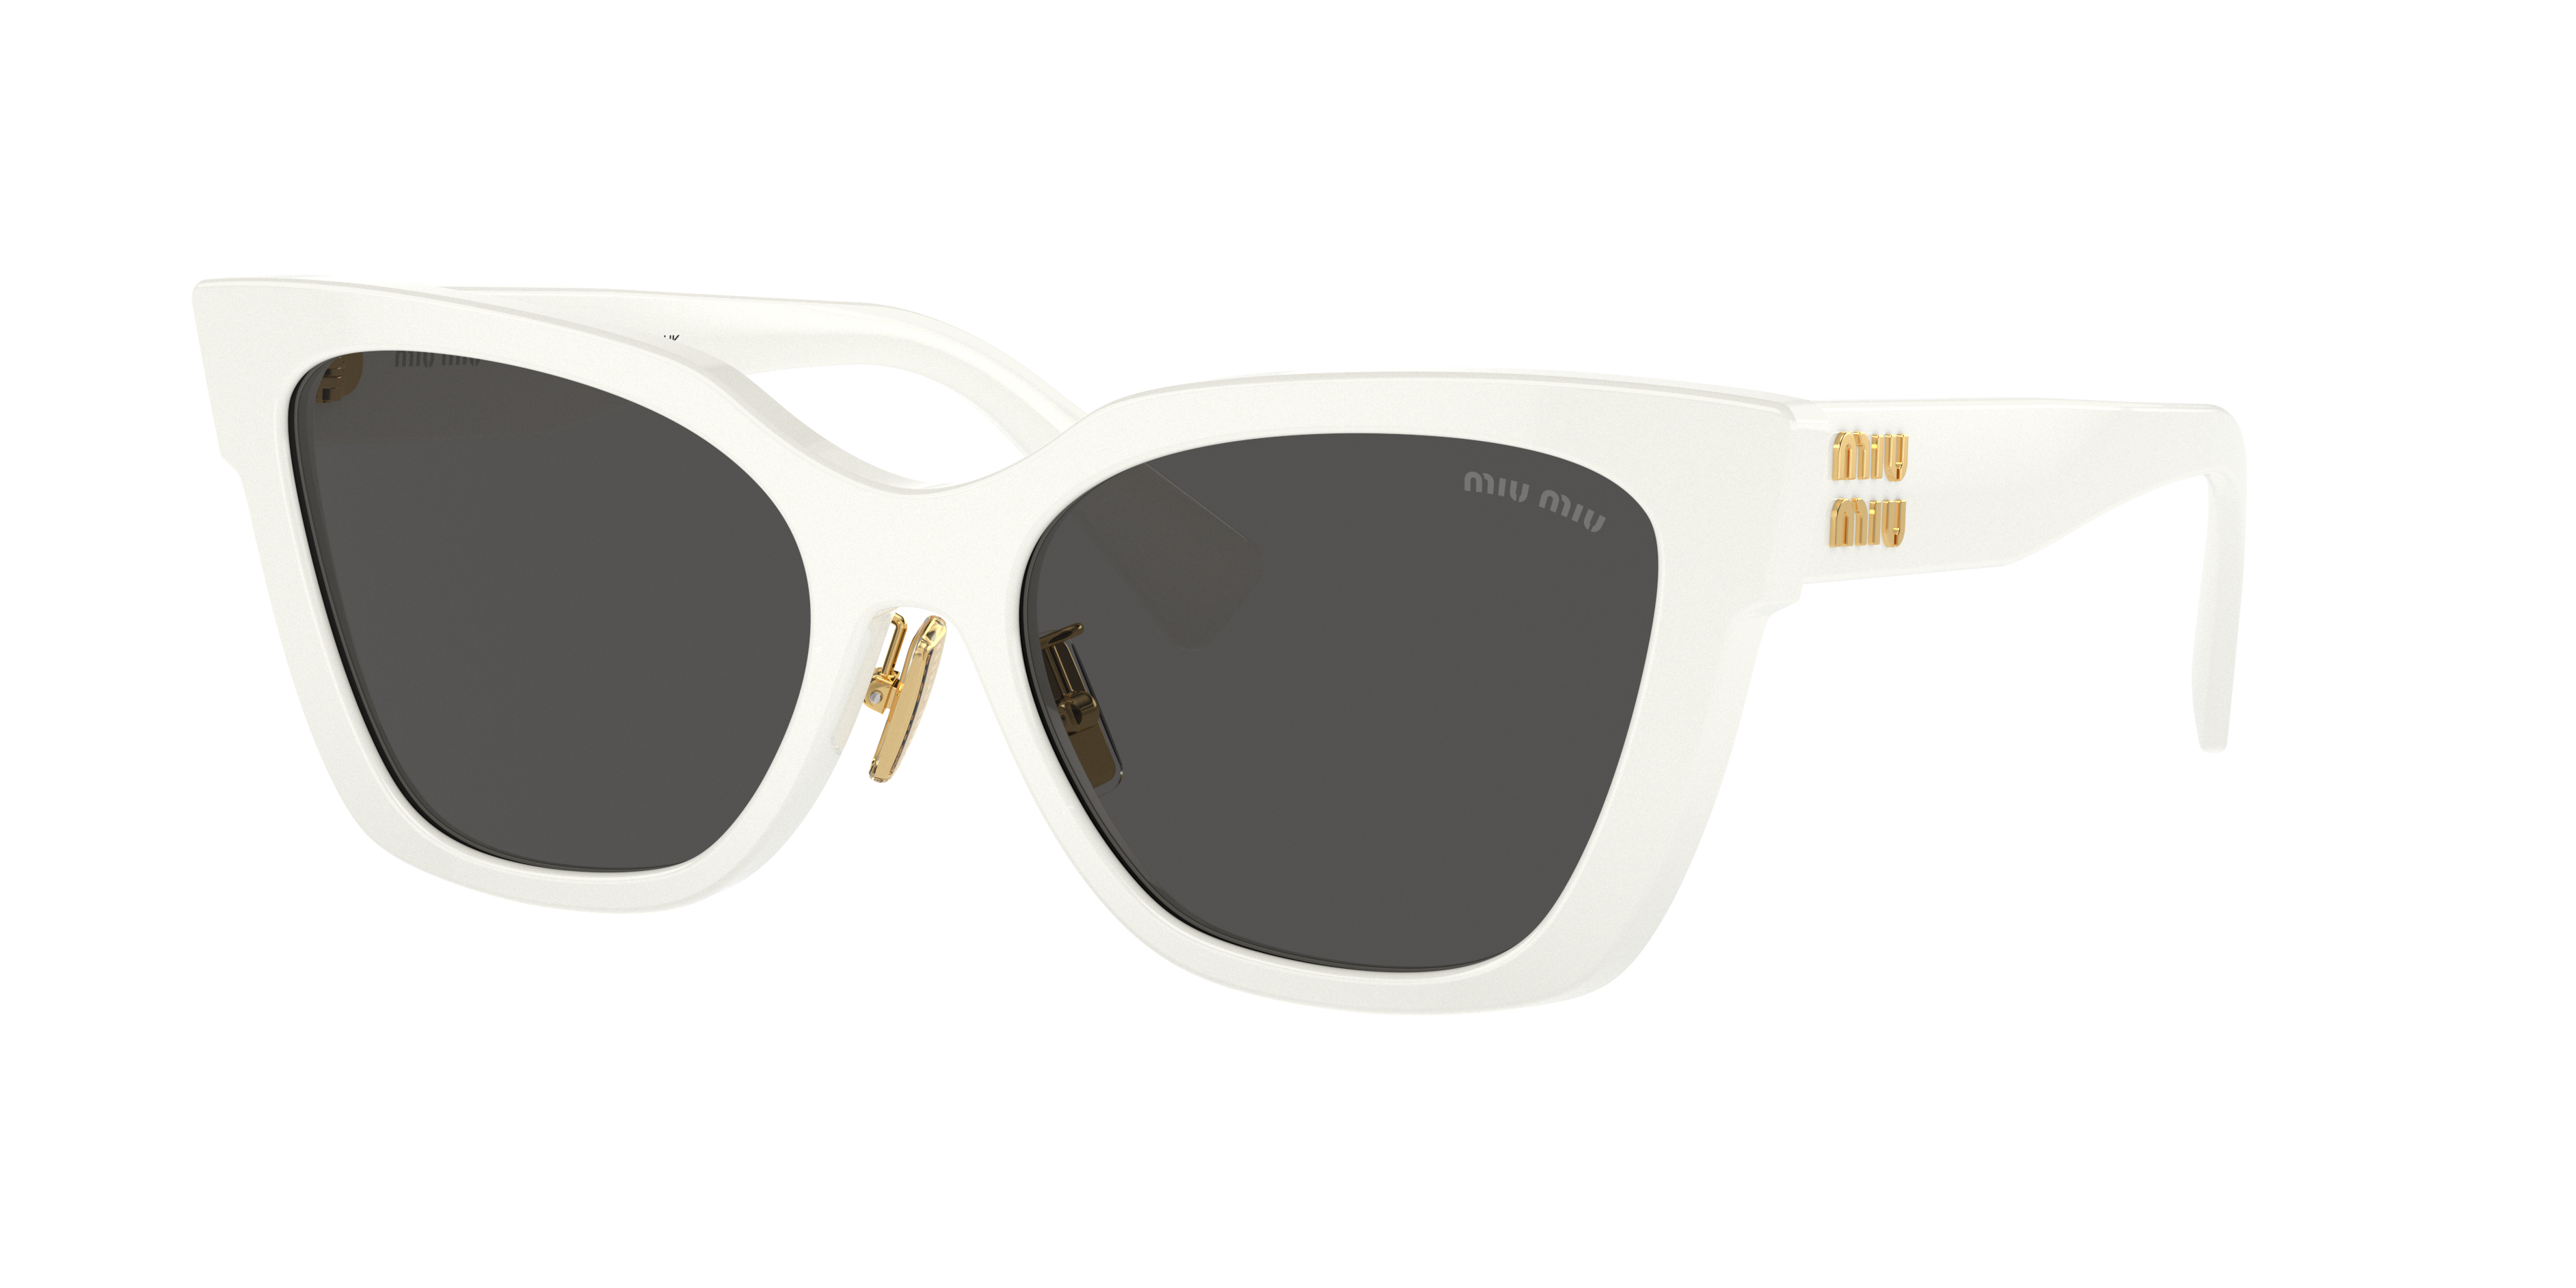 Consulte nosso catálogo de Óculos de Sol Miu Miu Eyewear com diversos modelos e preços para sua escolha.